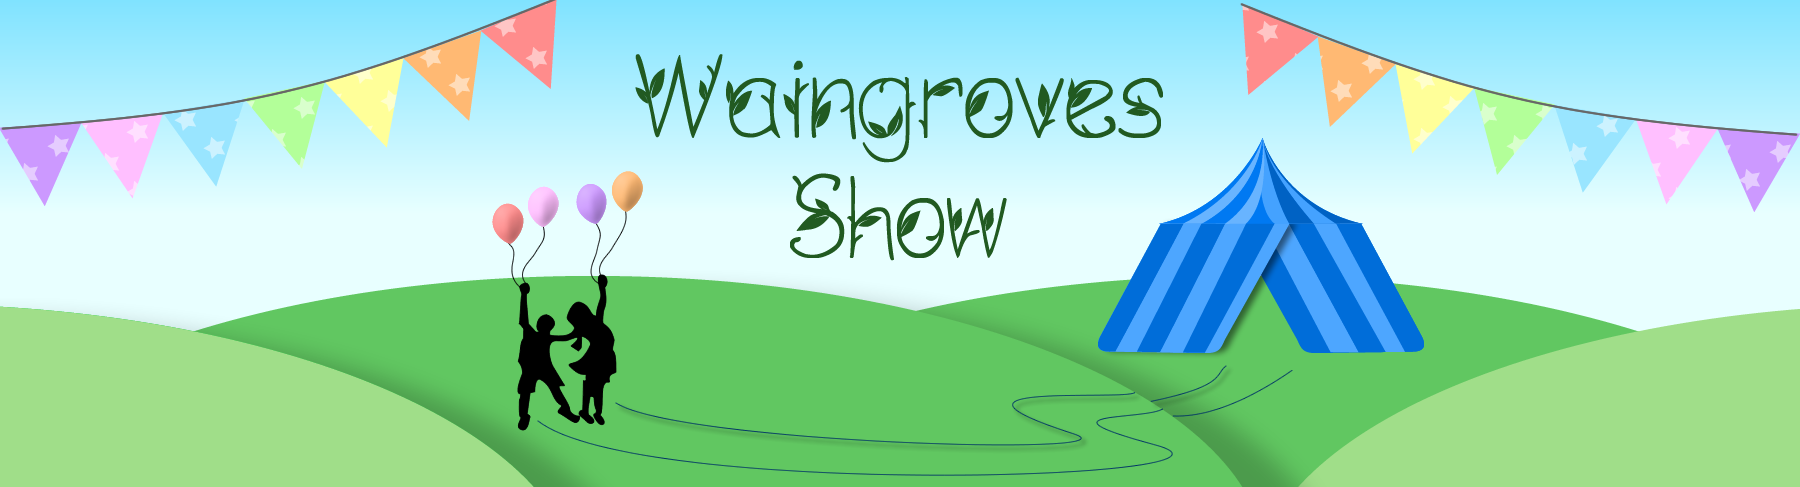 Waingroves Show